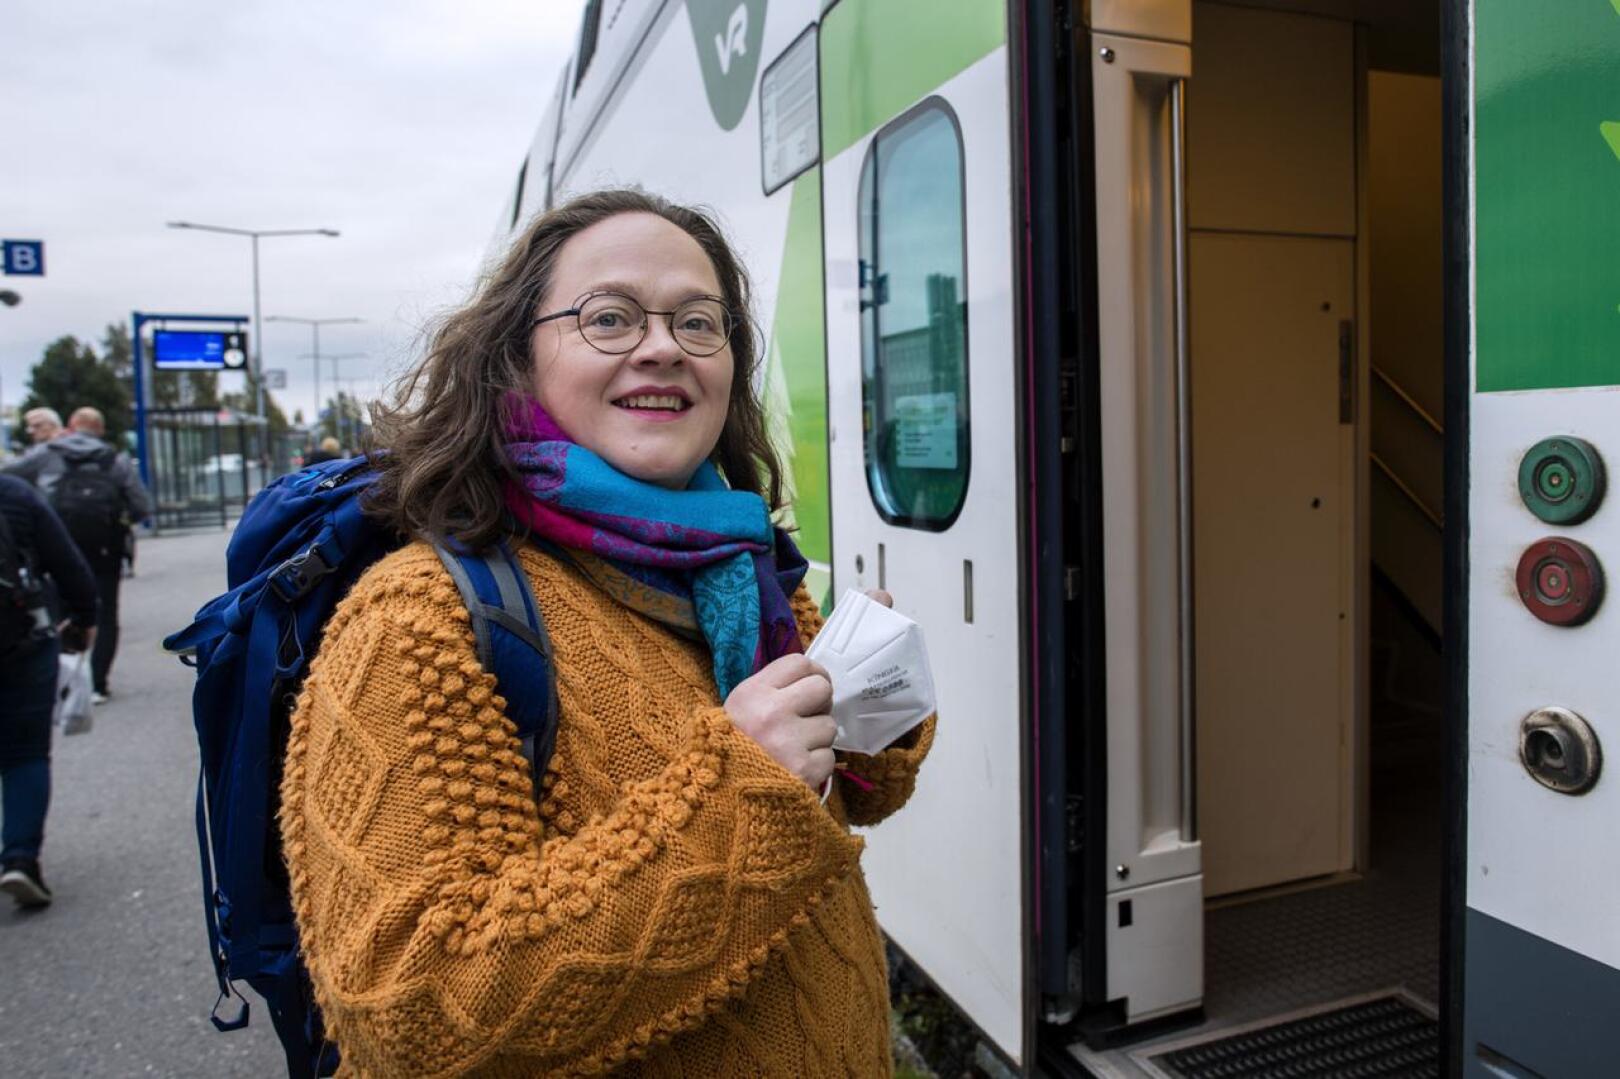 Kuoronjohtaja Marita Kaakinen käyttää maskia junassa reissatessan Ouluun kuoronsa harjoituksiin, mutta itse harjoituksissa maskeja ei tarvita, sillä turvavälit riittävät.